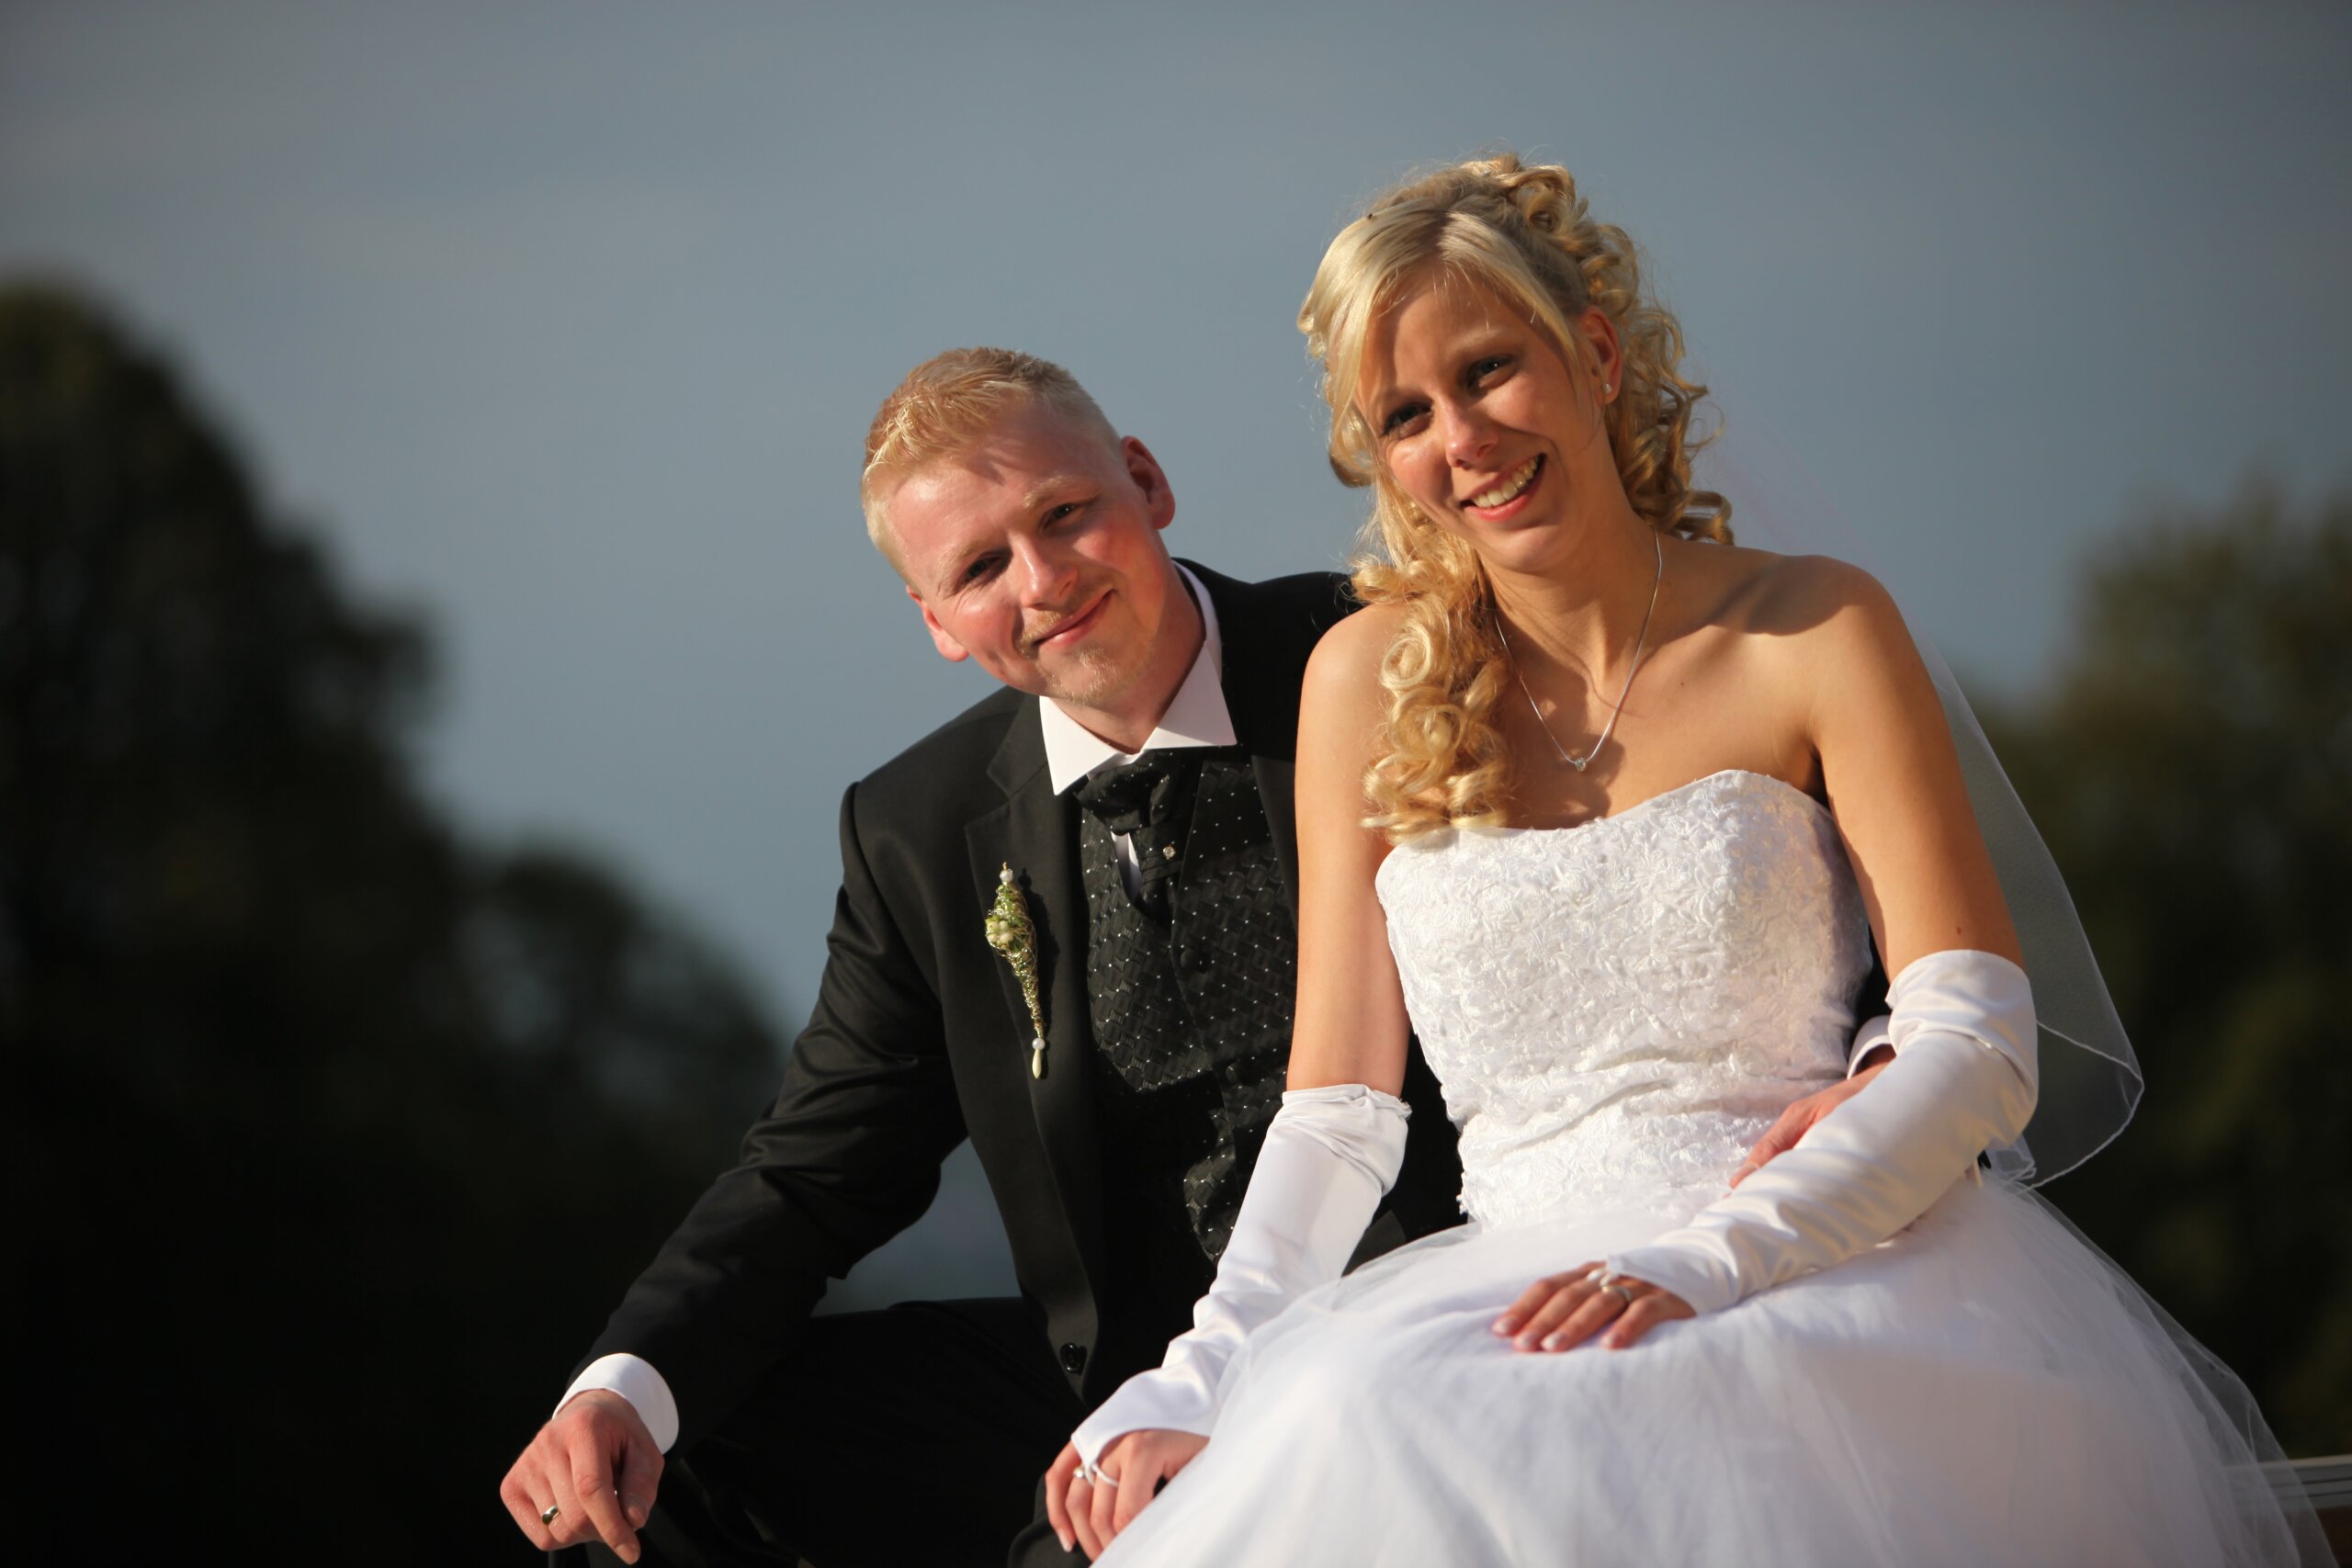 Fotoimpressionen vder Hochzeit von Eveline und Thomas Mohr